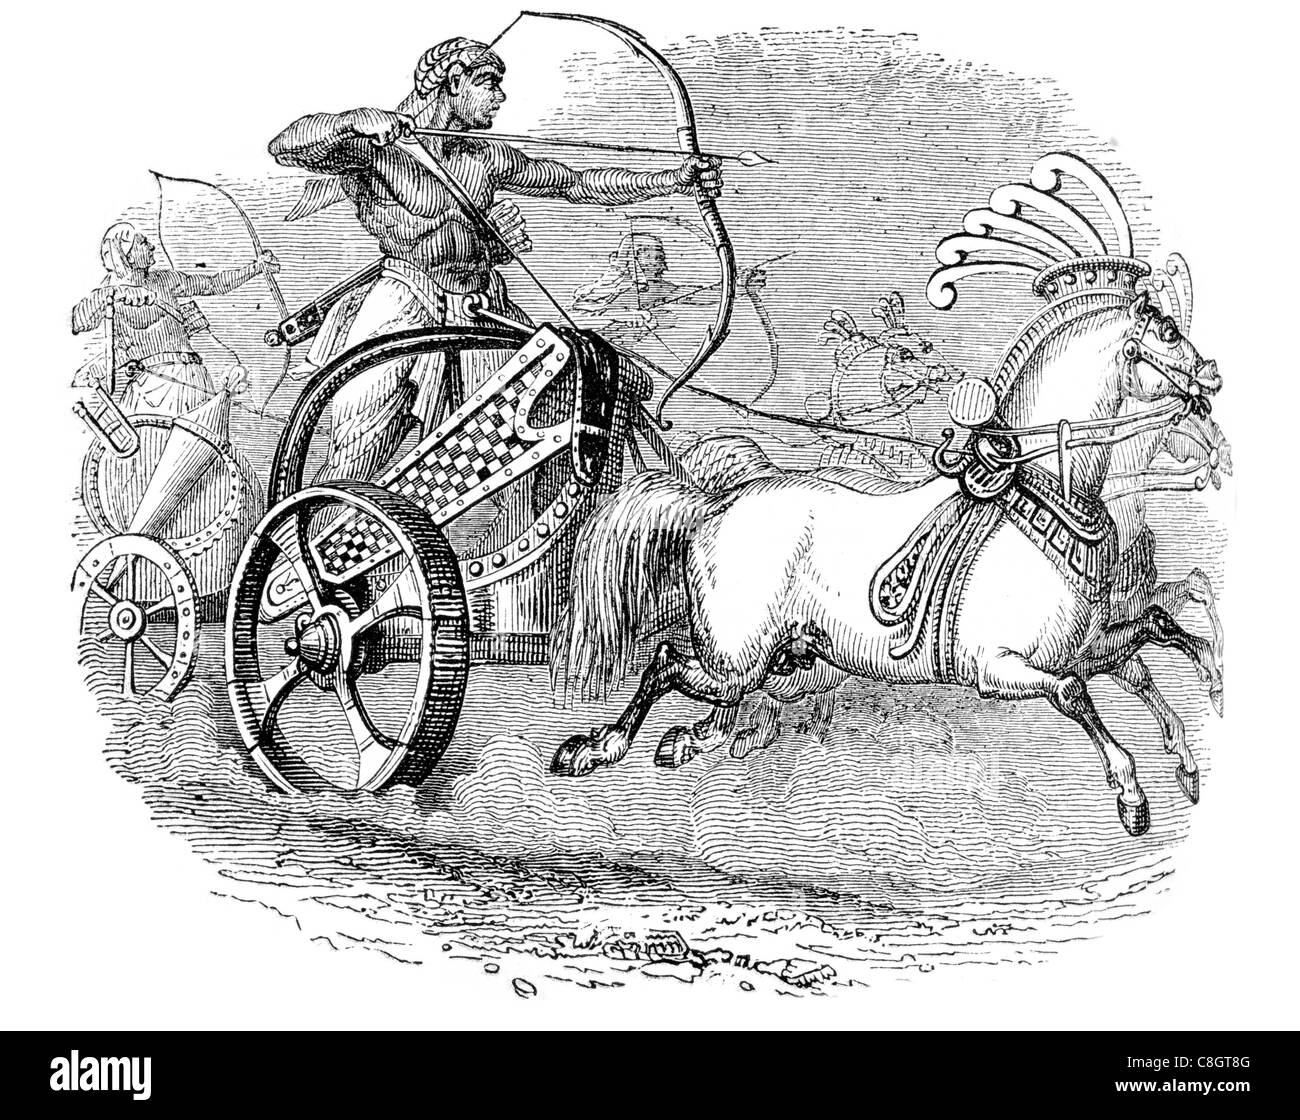 Des chars de l'Égypte ancienne chariotry char société force militaire du roi Hyksos Egypte exempte d'archer flèche bow guerre à cheval Banque D'Images